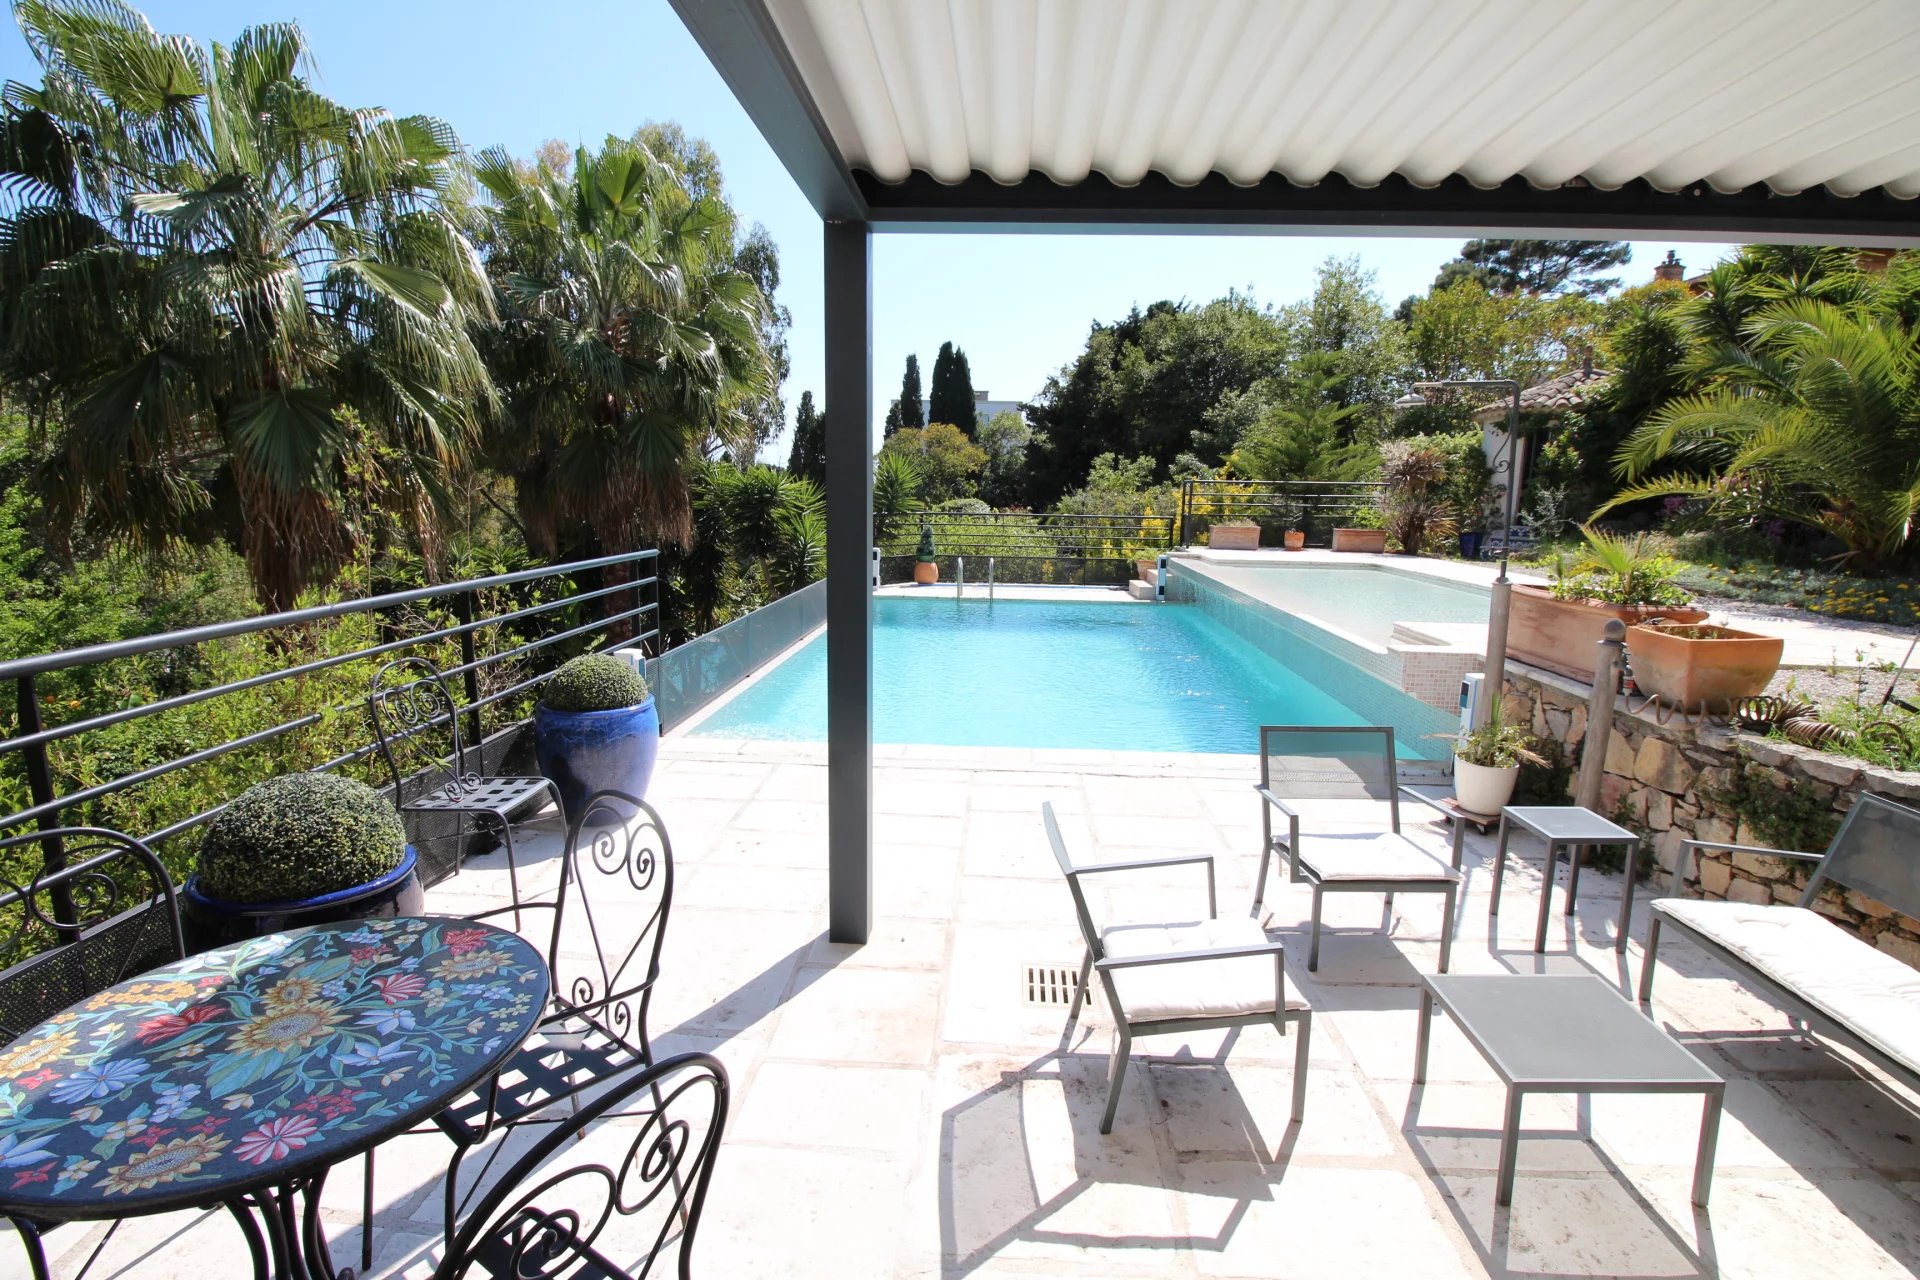 Cannes, Maison 7 Pièces, 250m², piscine.